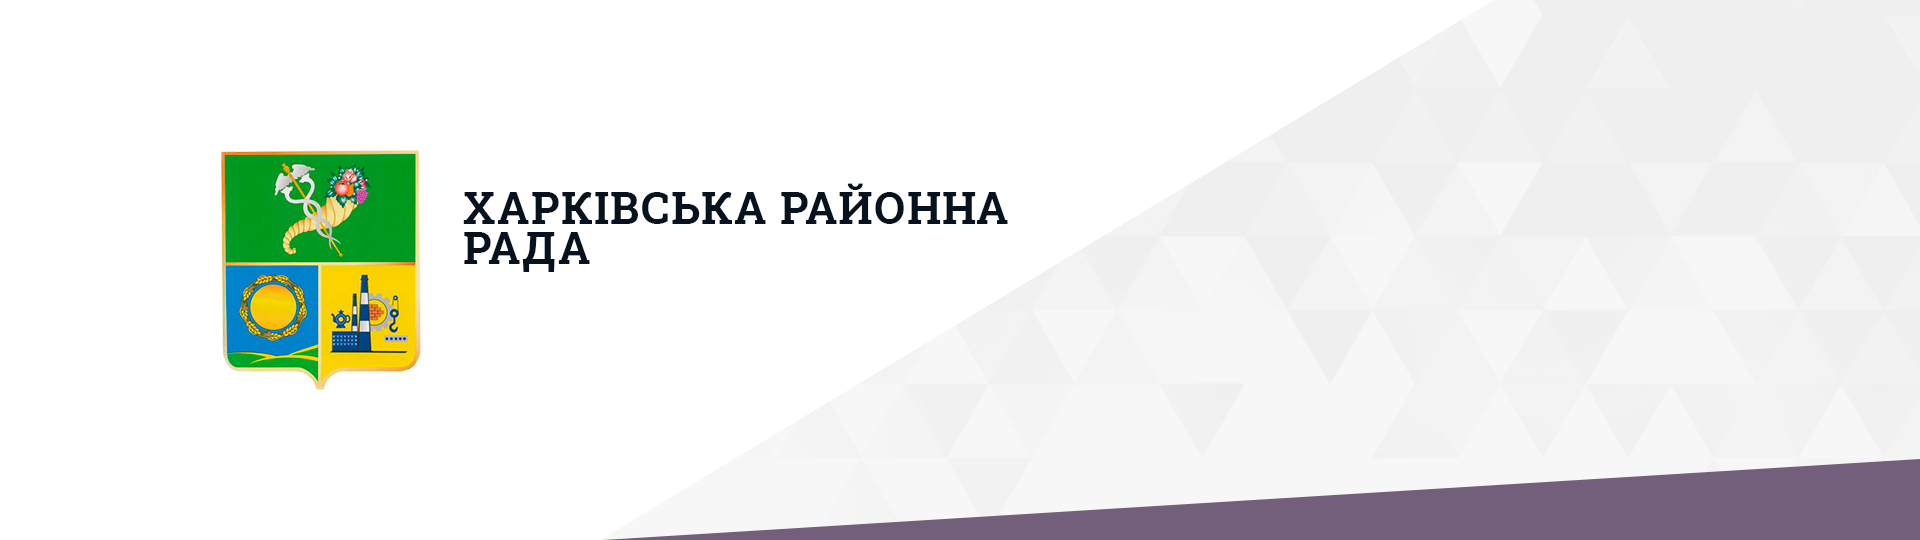 Geniustudio - Городской портал для Харьковской районной рады изображение 1